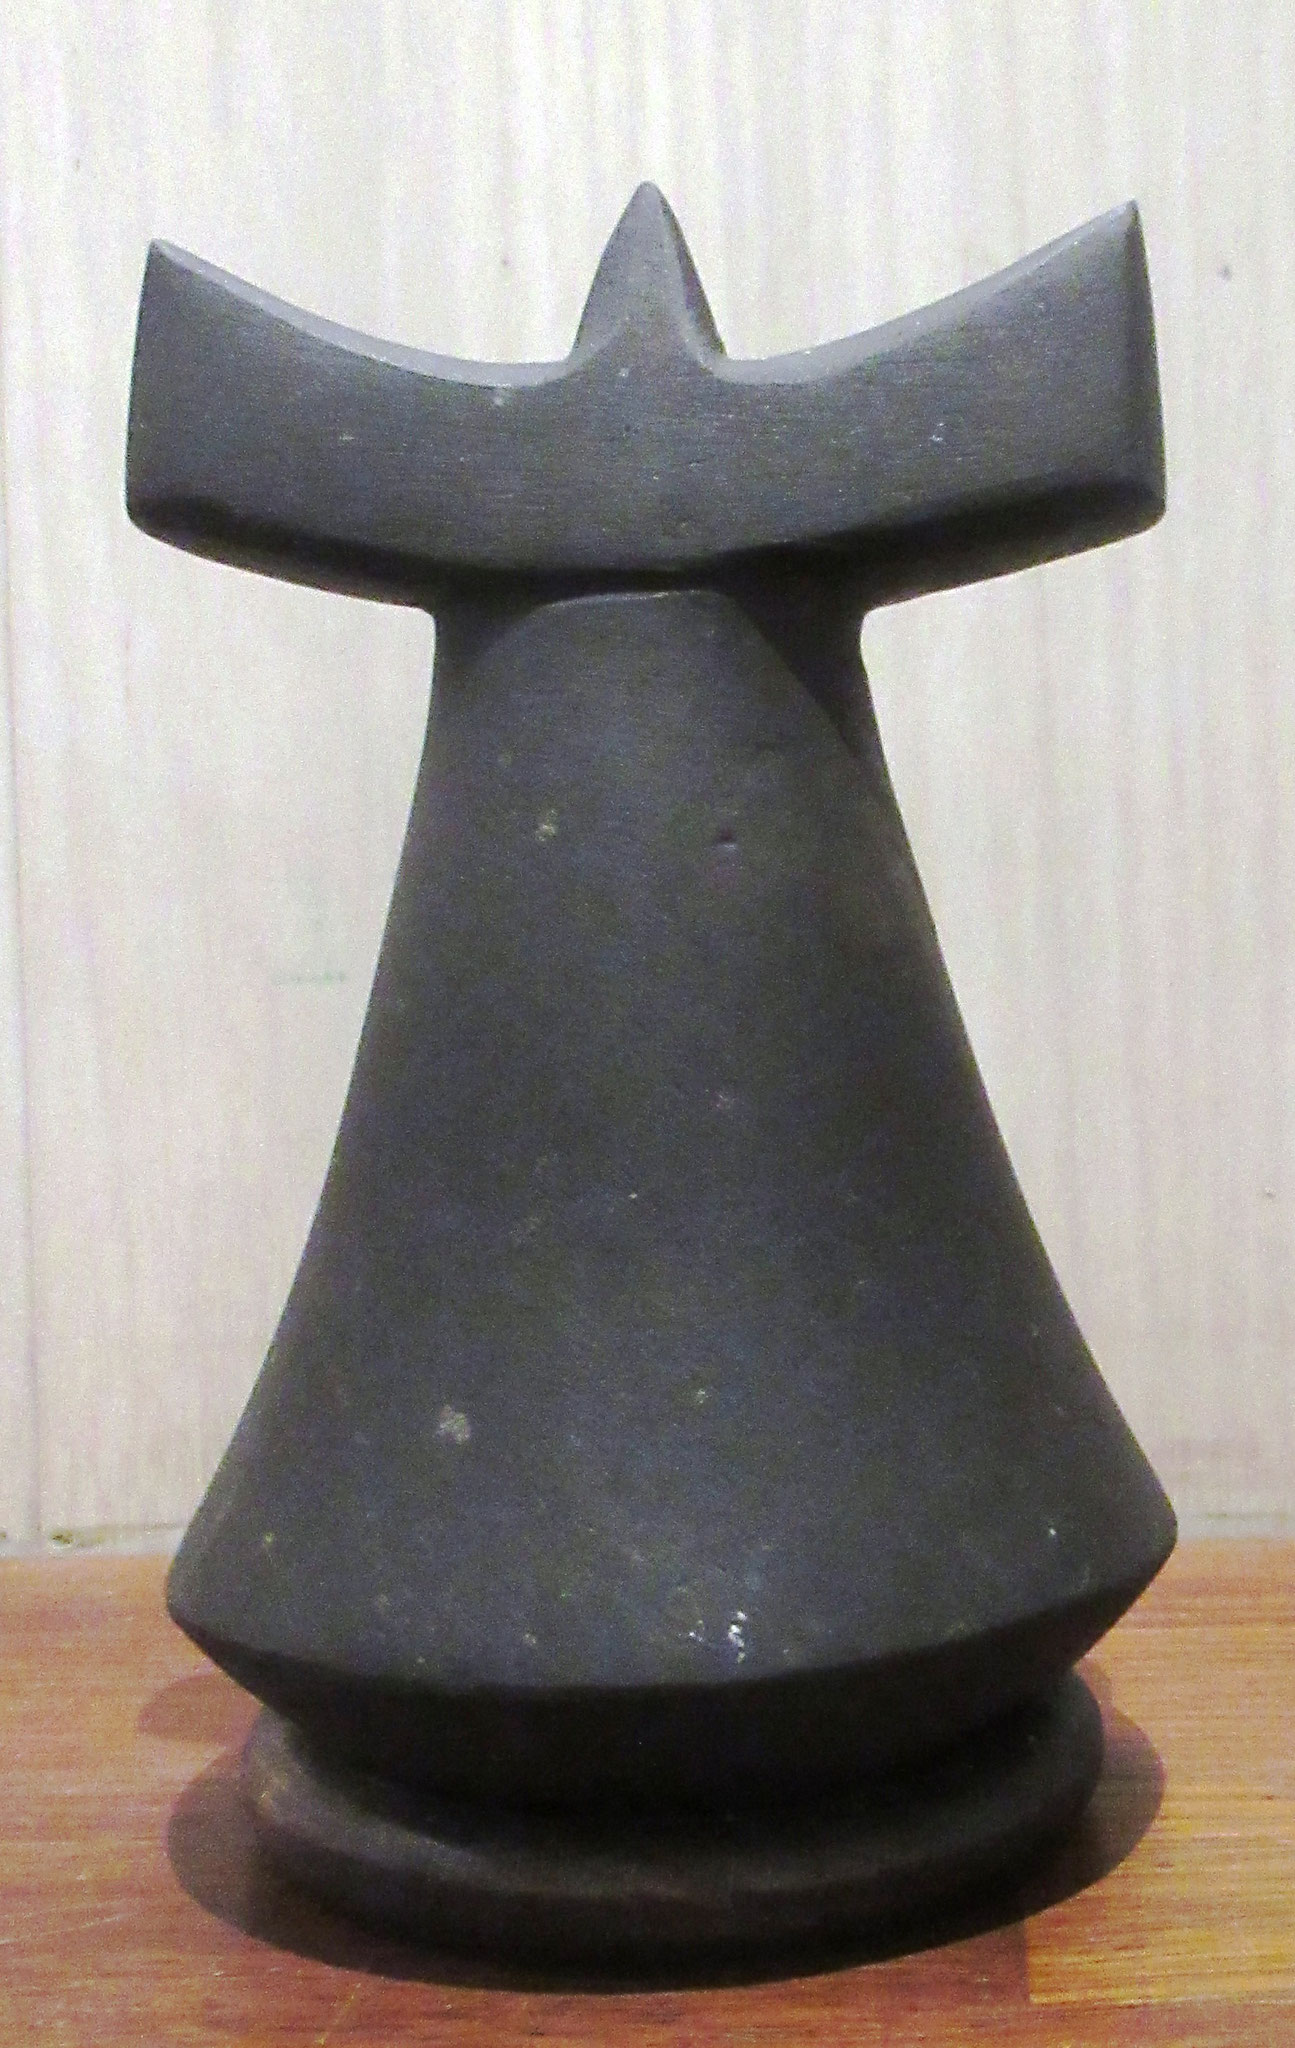 N°3869 - Penu - H12 - Matériau(x): Basalte - Origine: Maupiti